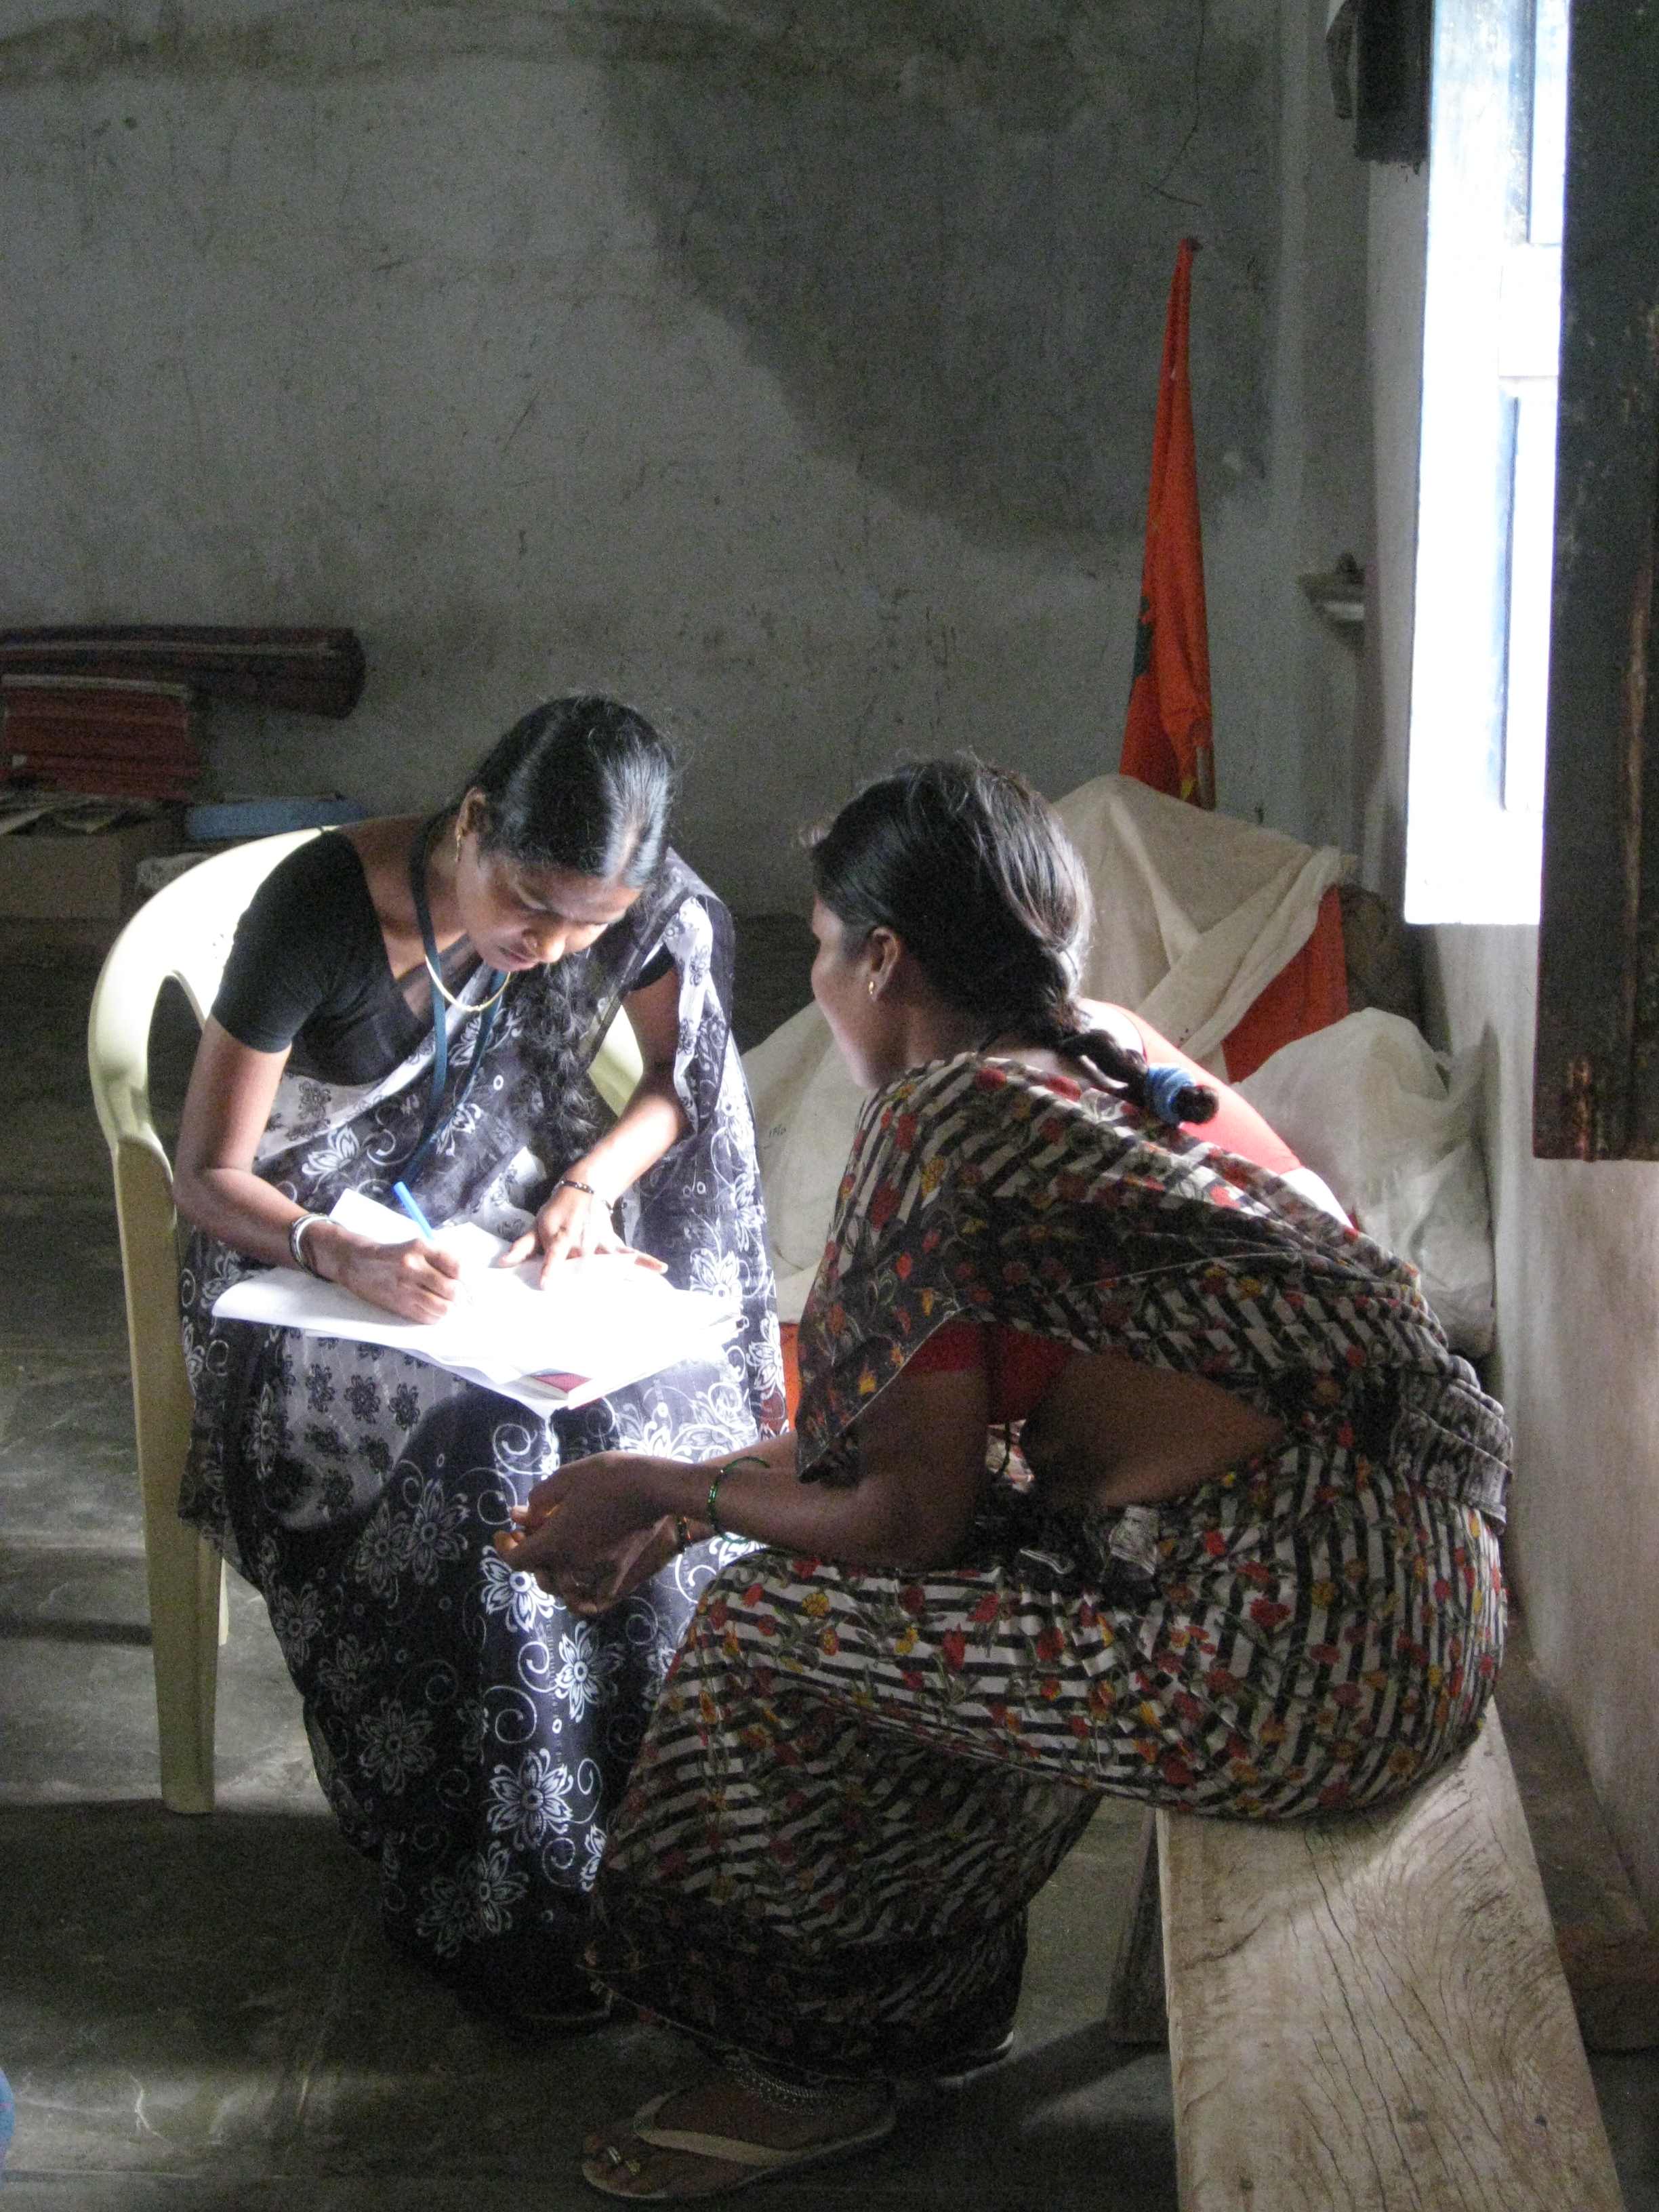 Antenatal check-up, Telangana, India